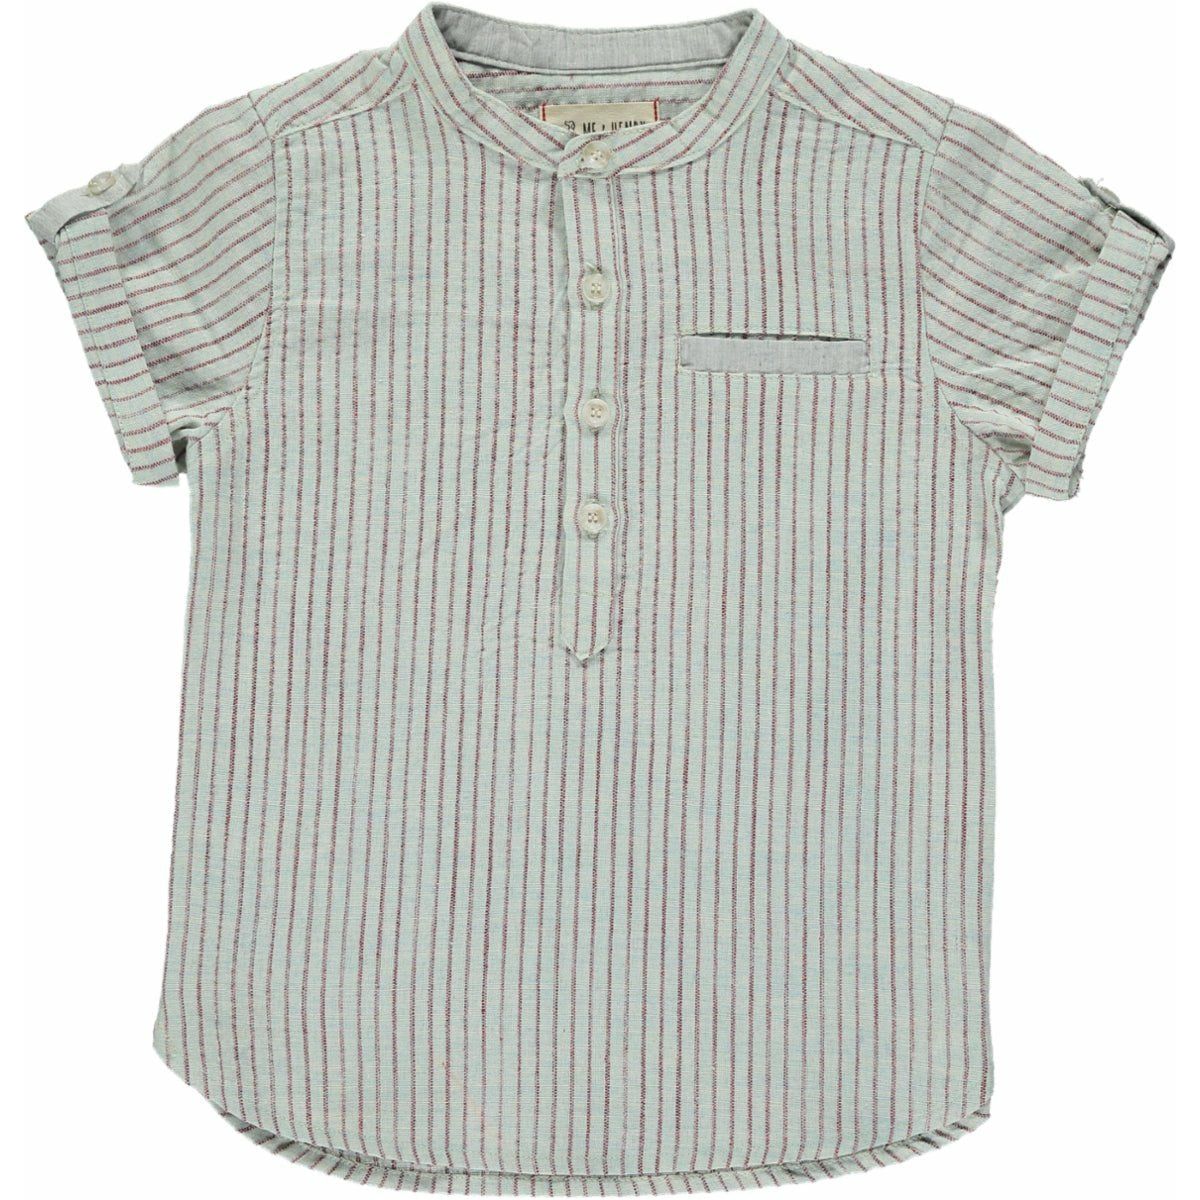 Boy's Shirt - Cream/Red Stripe - Collins & Conley